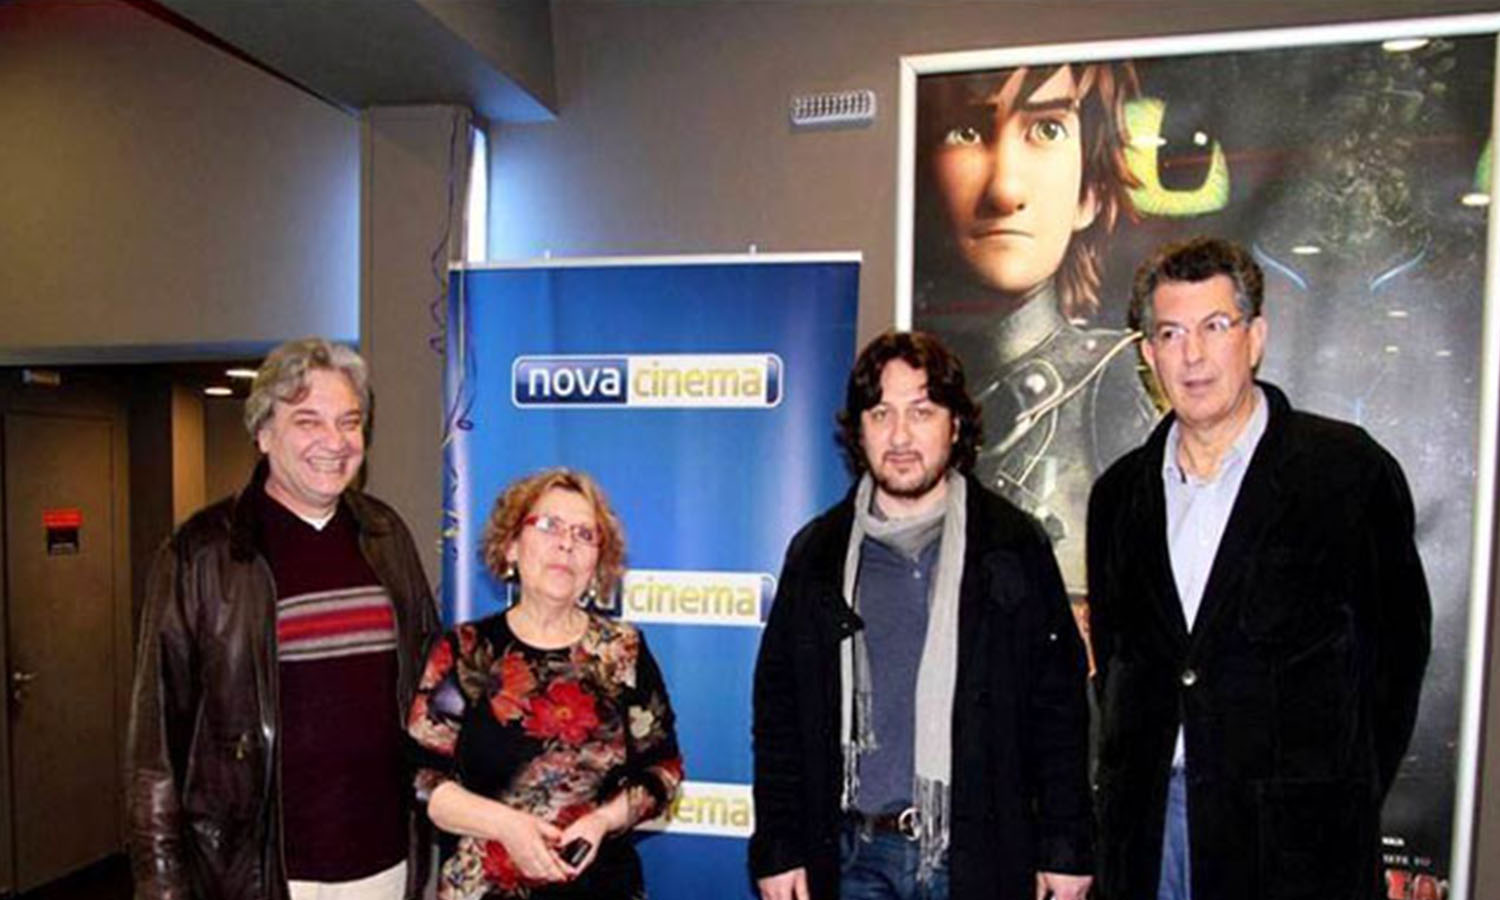 Η πρόεδρος του φεστιβάλ Άντα Σαρτζή, με τα μέλη της Πανελλήνιας Ένωσης Κριτικών Κινηματογράφου: (από αριστερά) Βασίλη Κεχαγιά, Νίκο Αρτινό και Ανδρέα Τύρο.